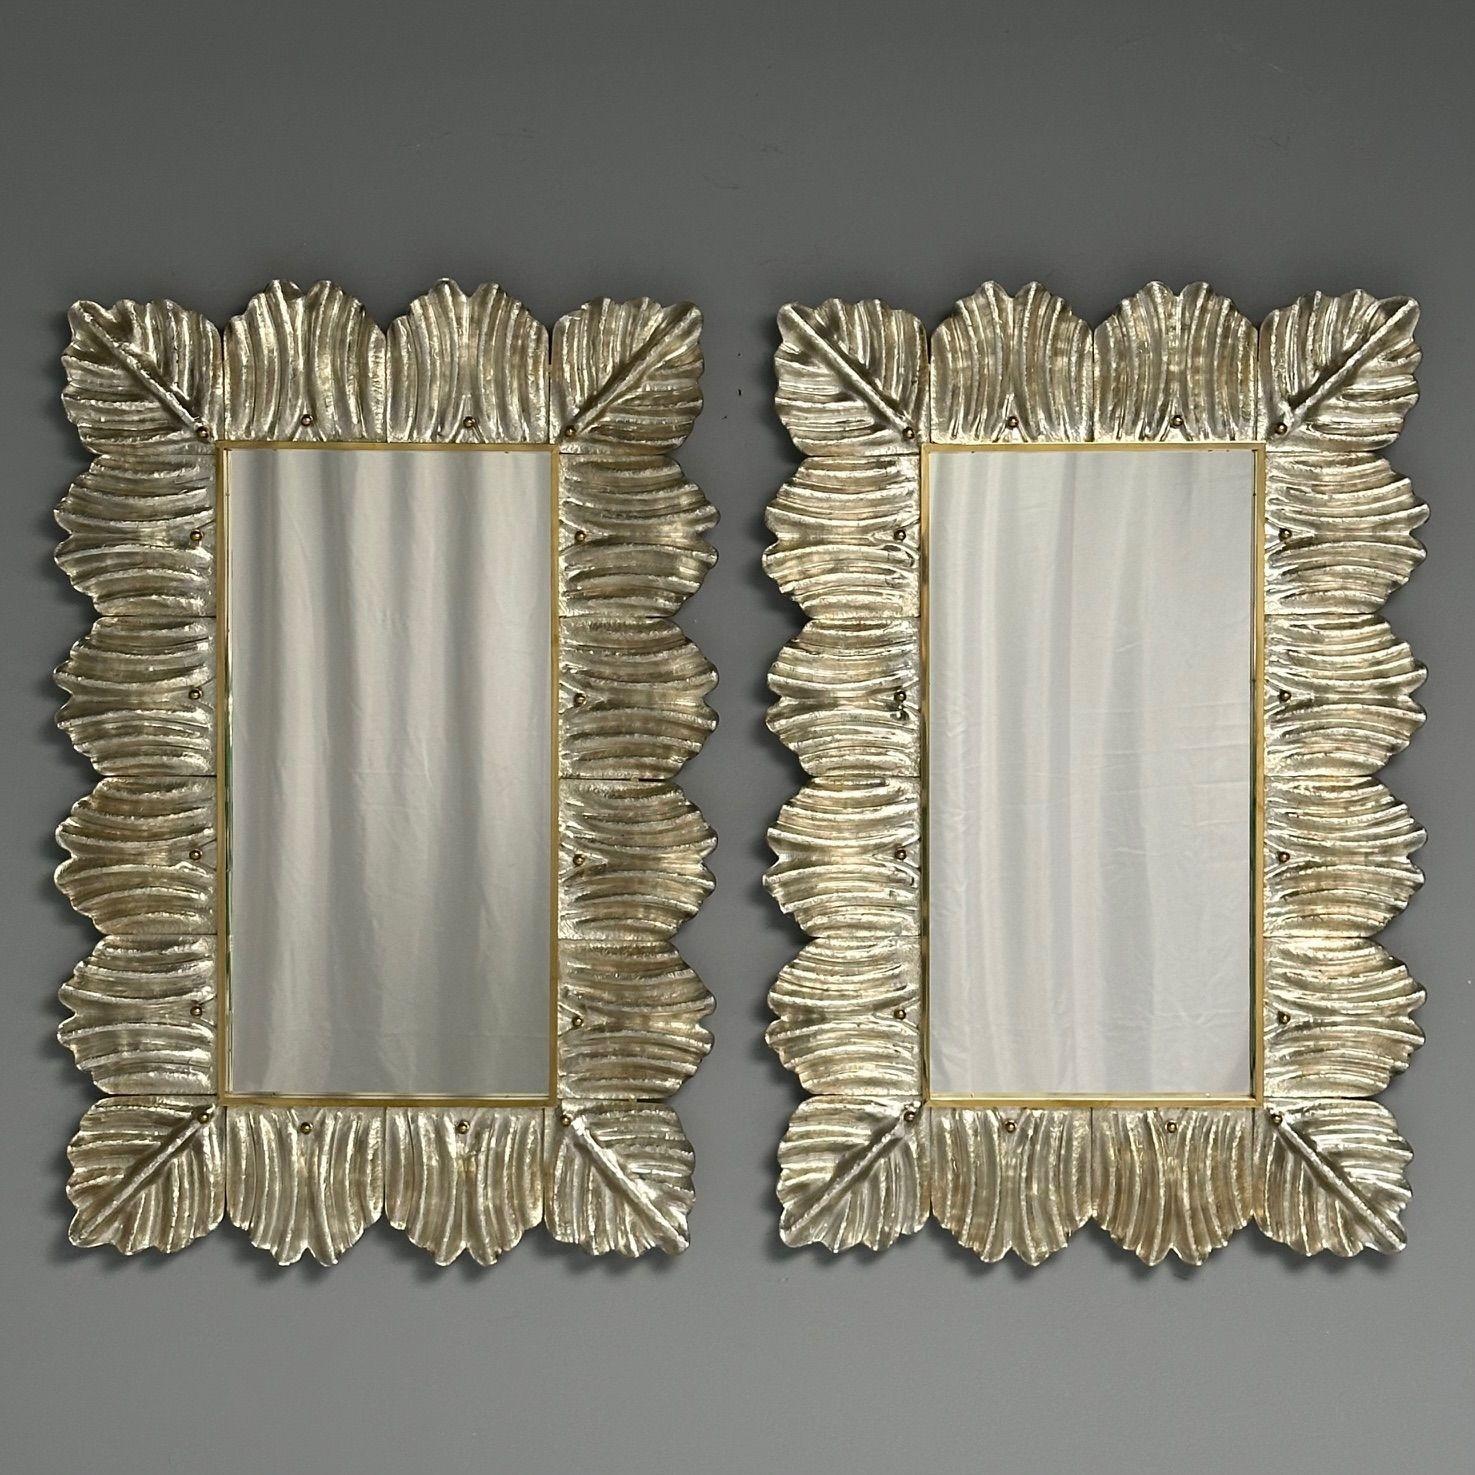 Contemporain, miroirs muraux avec motif de feuilles, verre de Murano, argent doré, Italie, 2023

Paire de miroirs muraux rectangulaires conçus et fabriqués à la main dans un petit atelier de Venise, en Italie. Chaque miroir est doté d'un cadre en